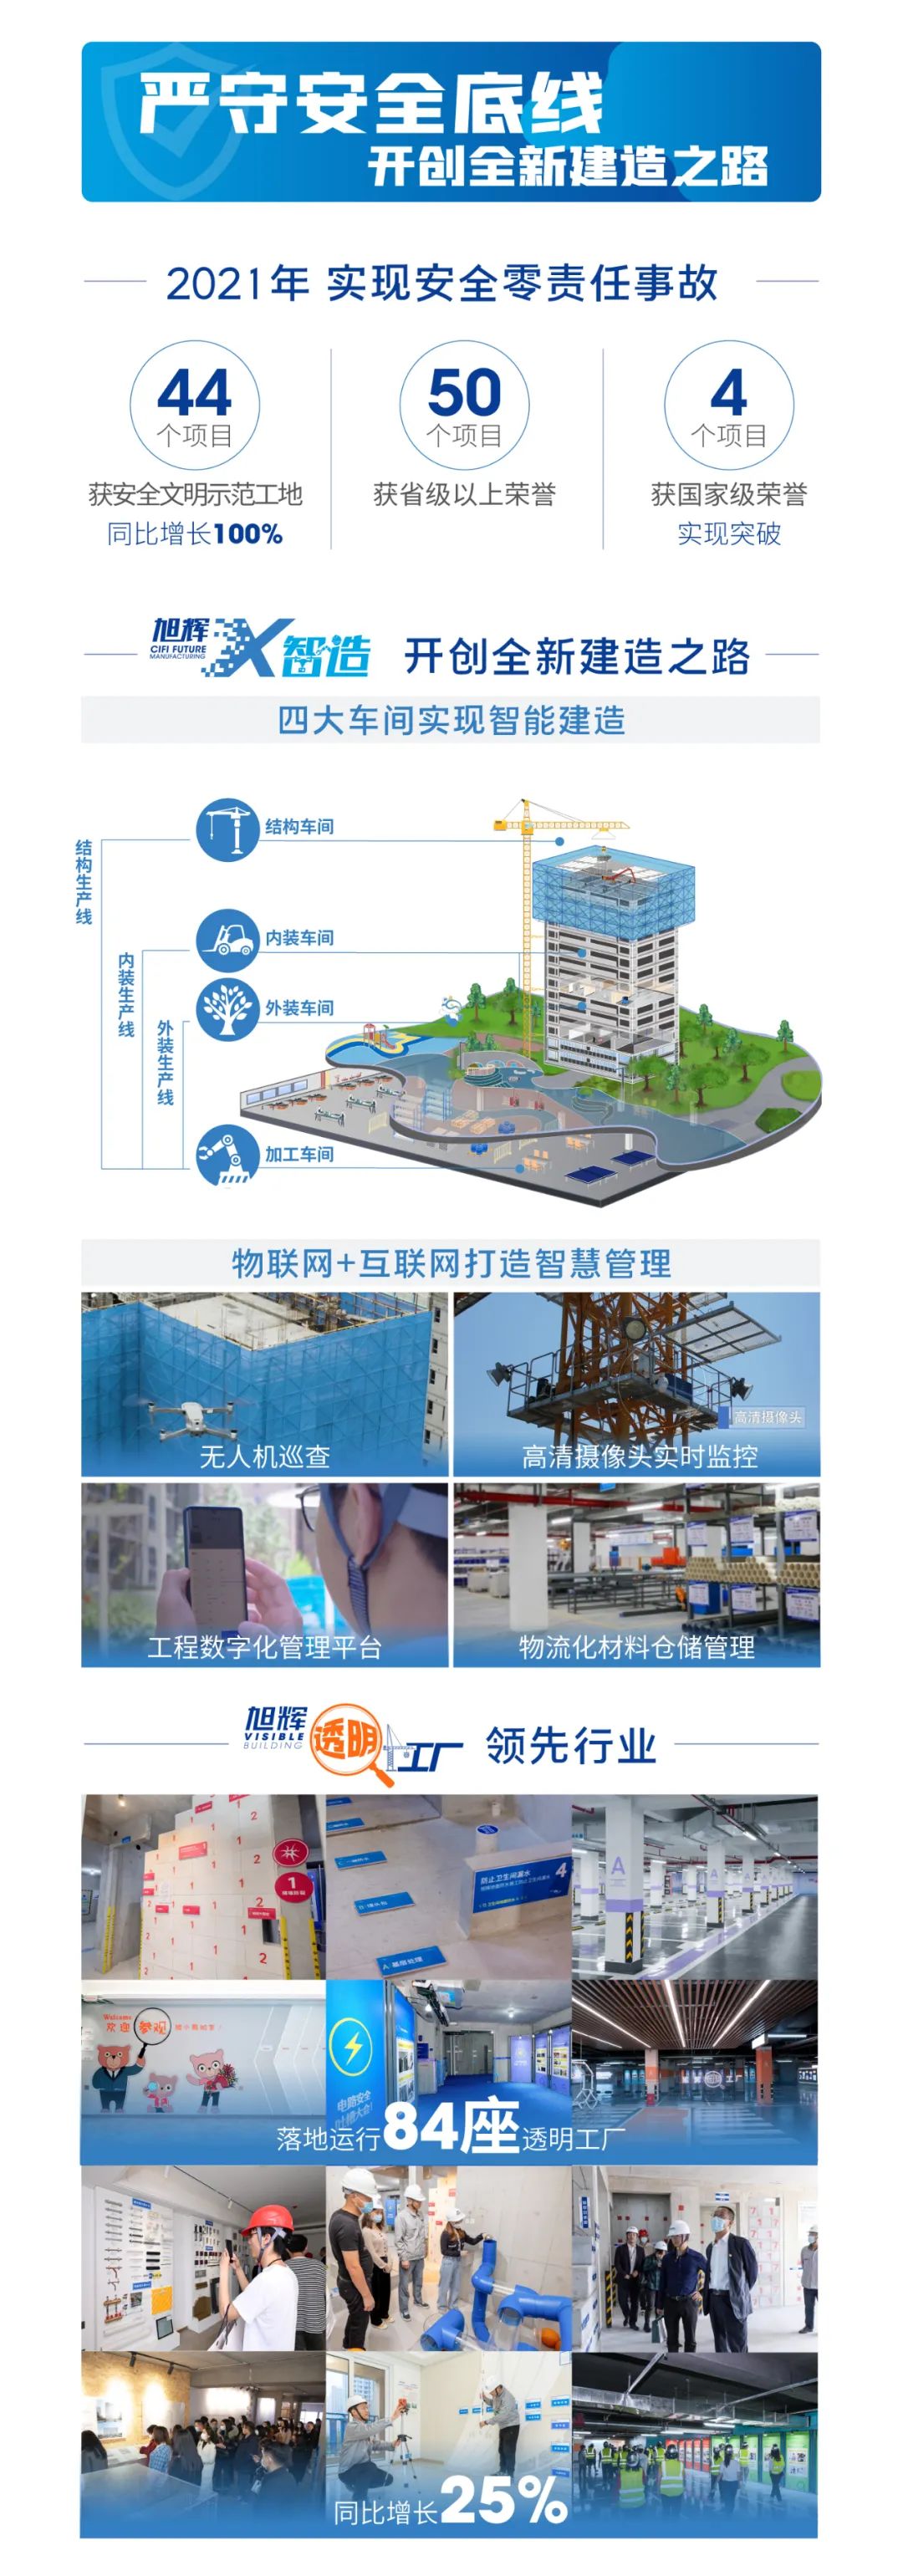 图解旭辉2021 ESG报告_中国网地产